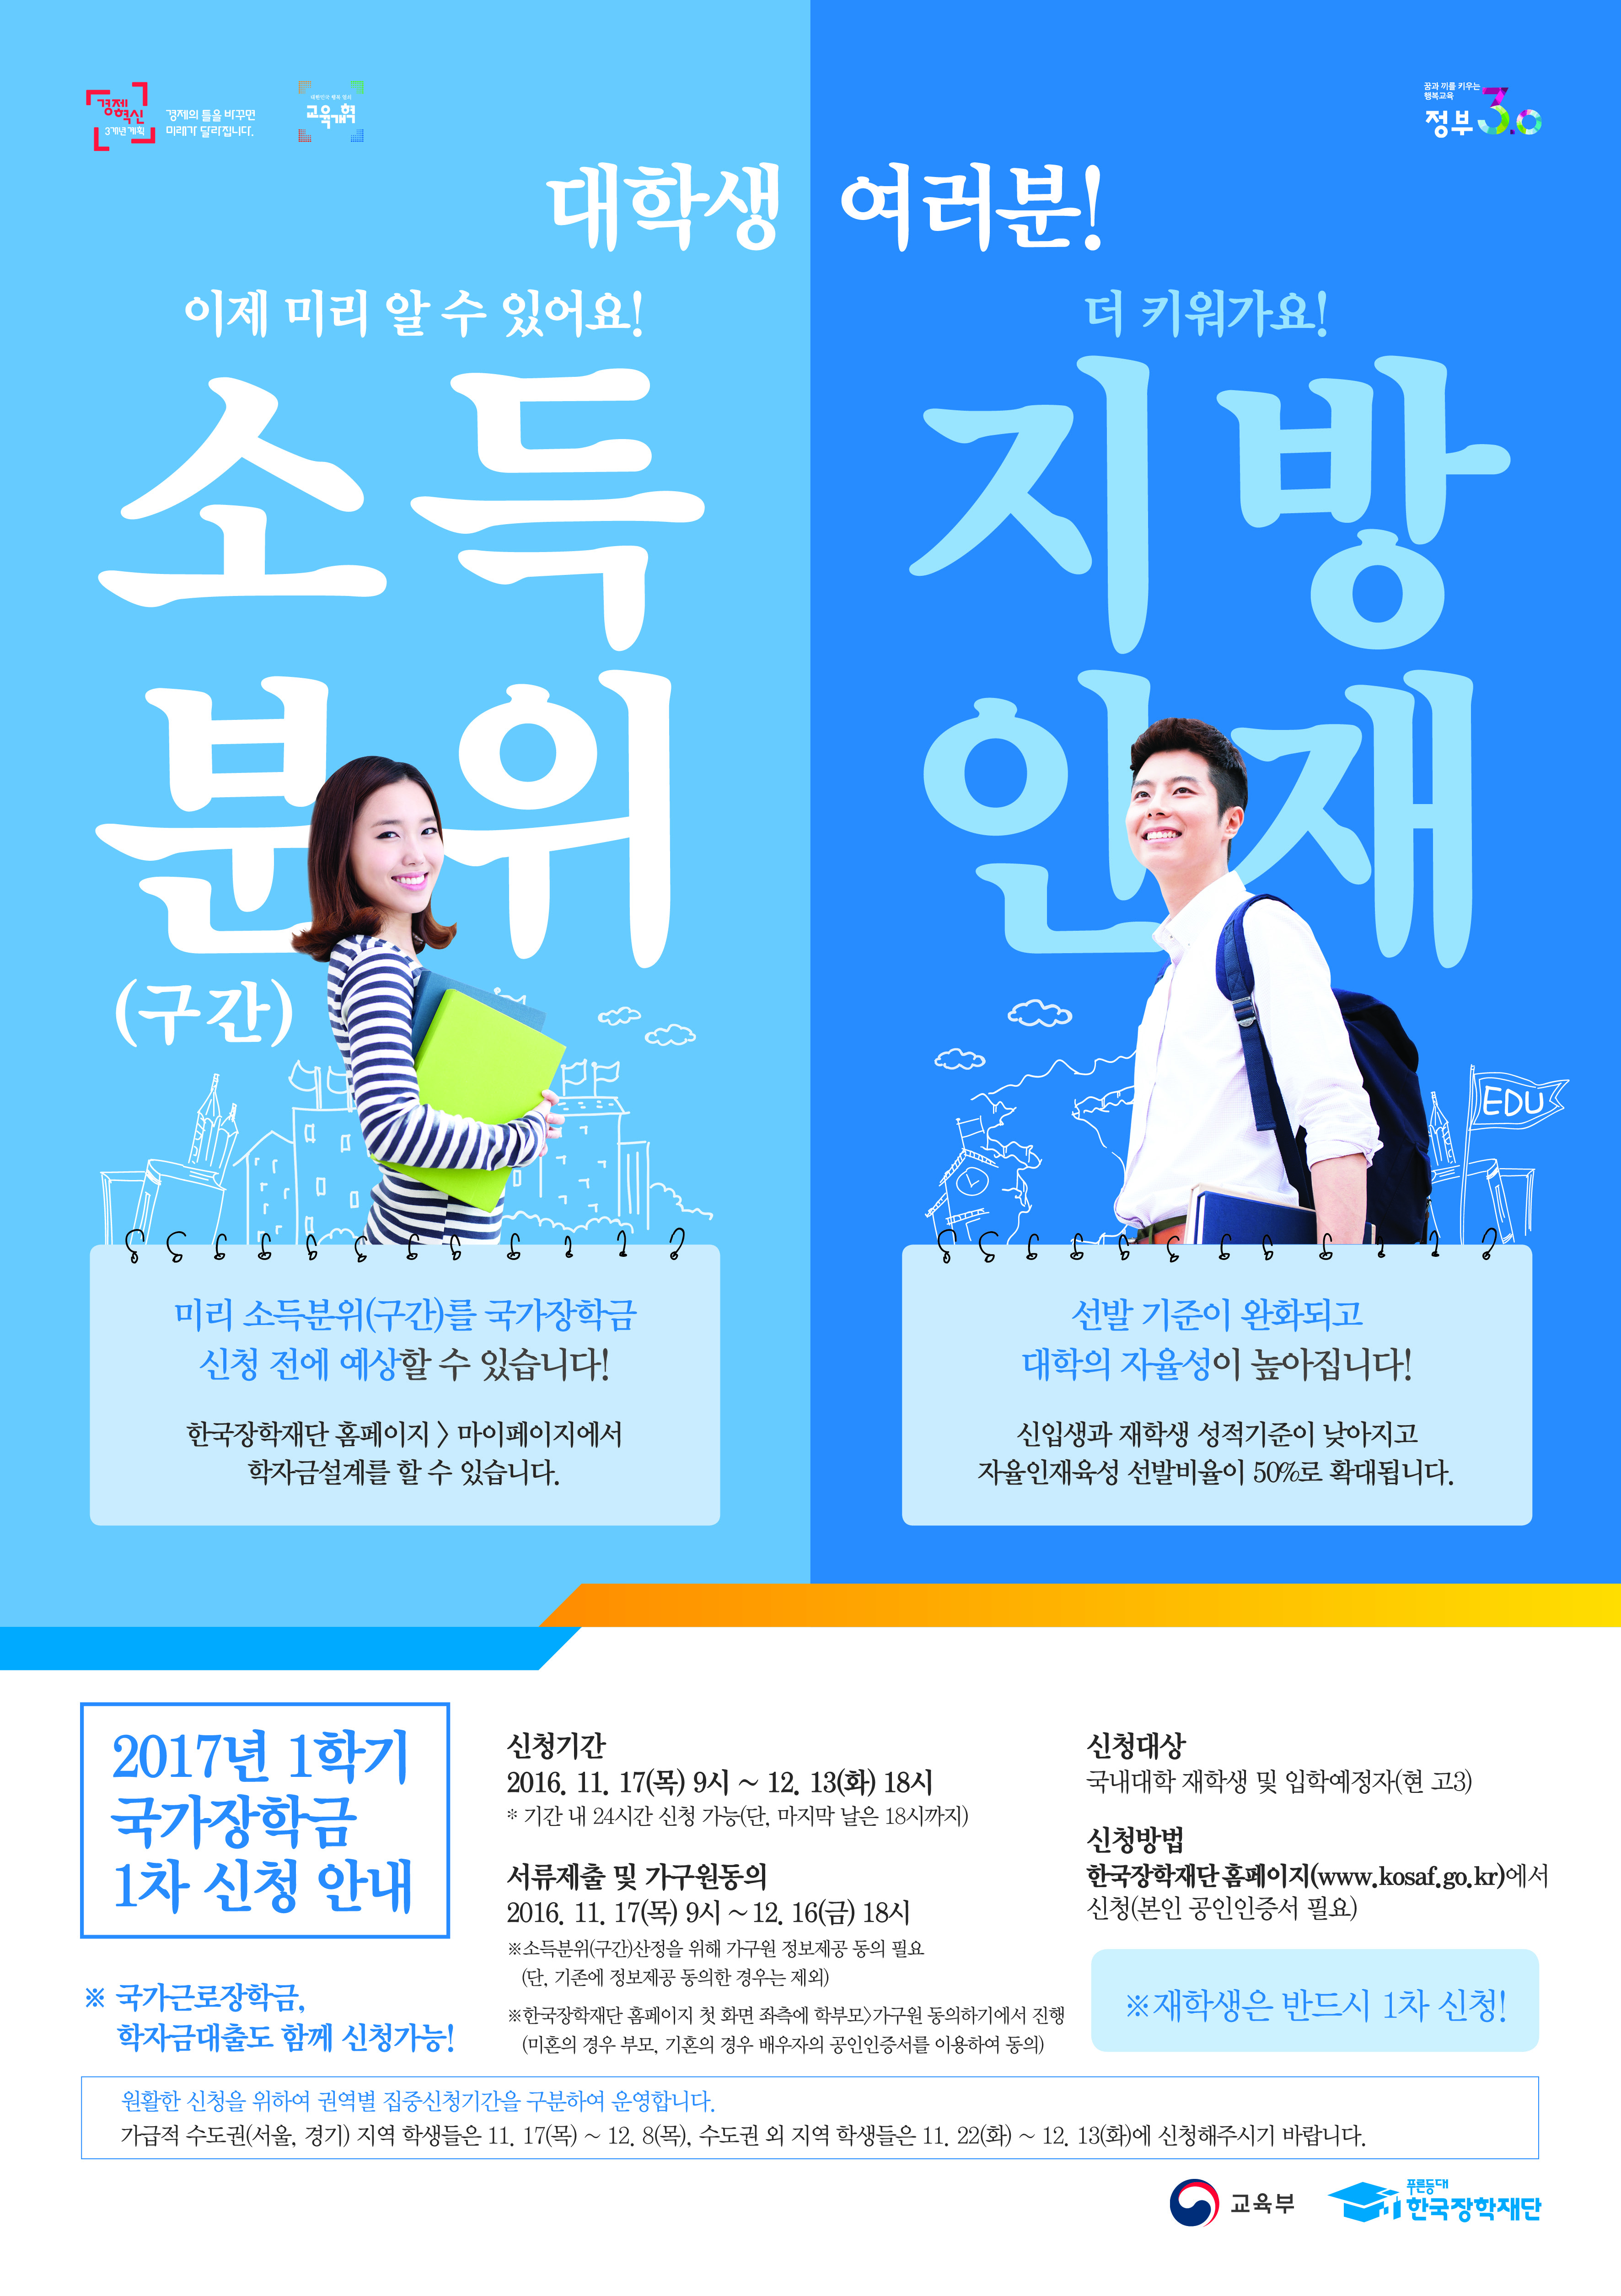 [중요] 2017-1 국가장학금 1차 신청기간 안내